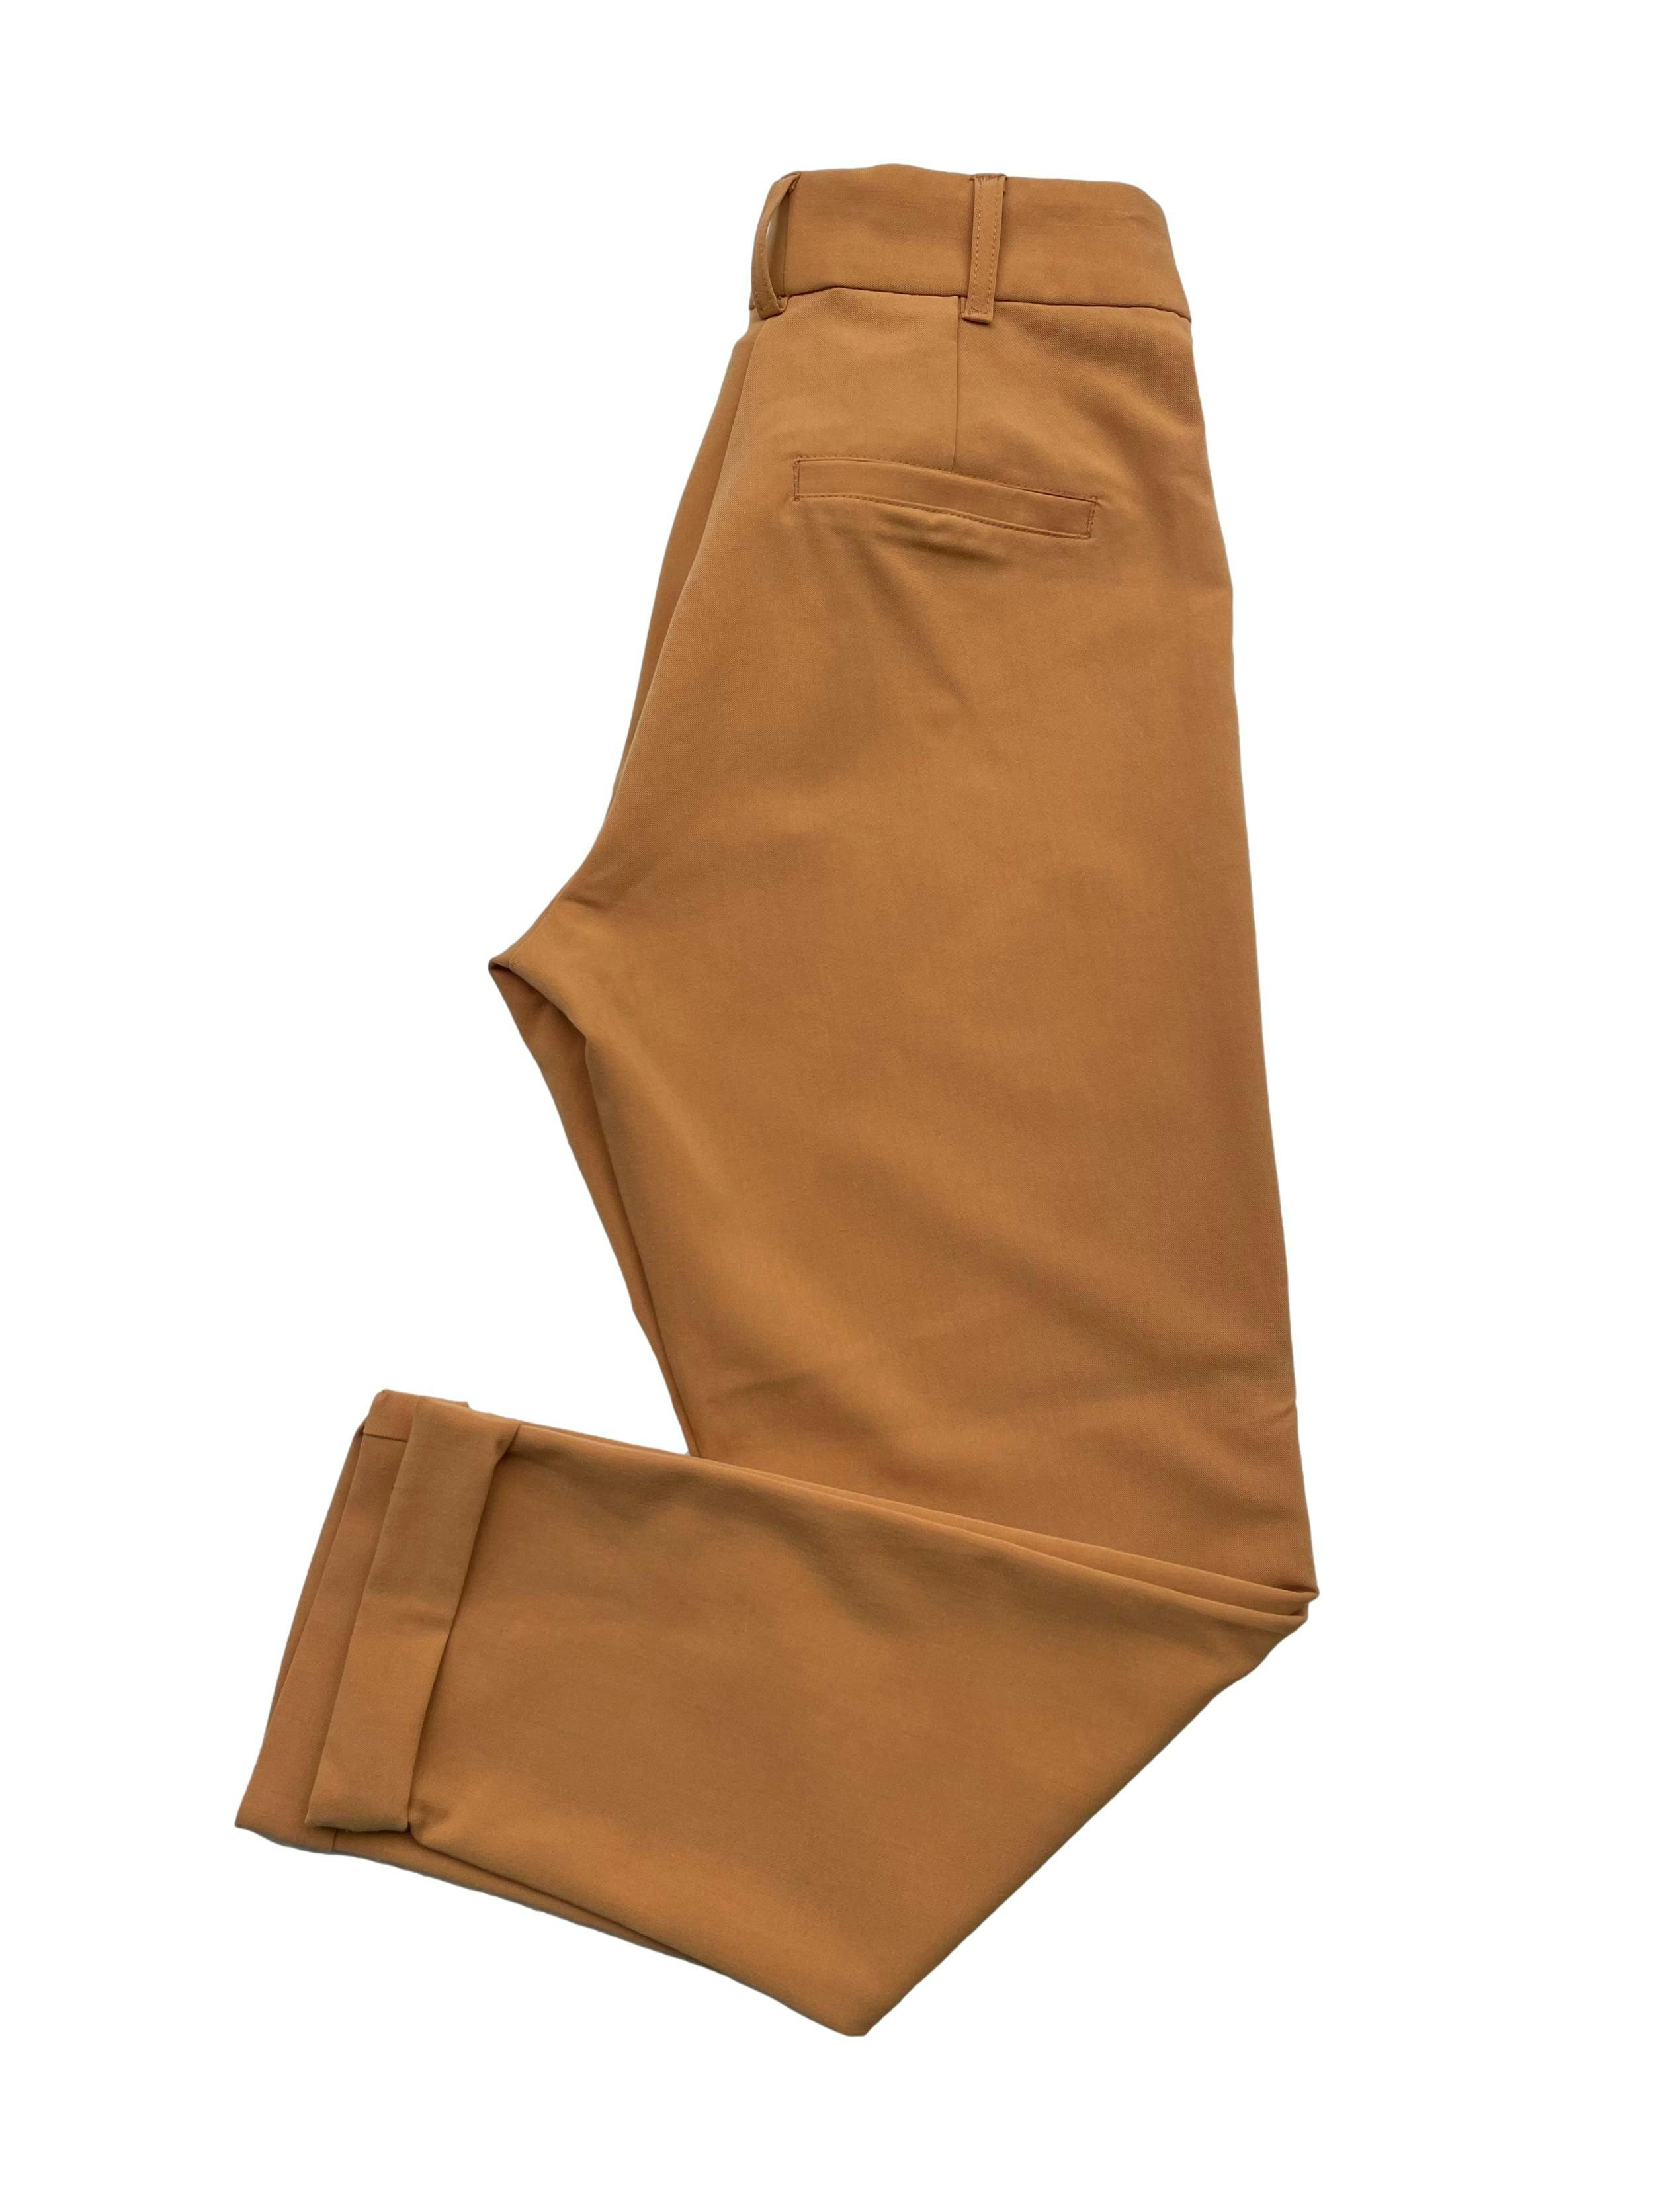 Pantalón mostaza, tela tipo sastre, con pinzas y dobladillo en basta. Cintura 70cm Largo 89cm